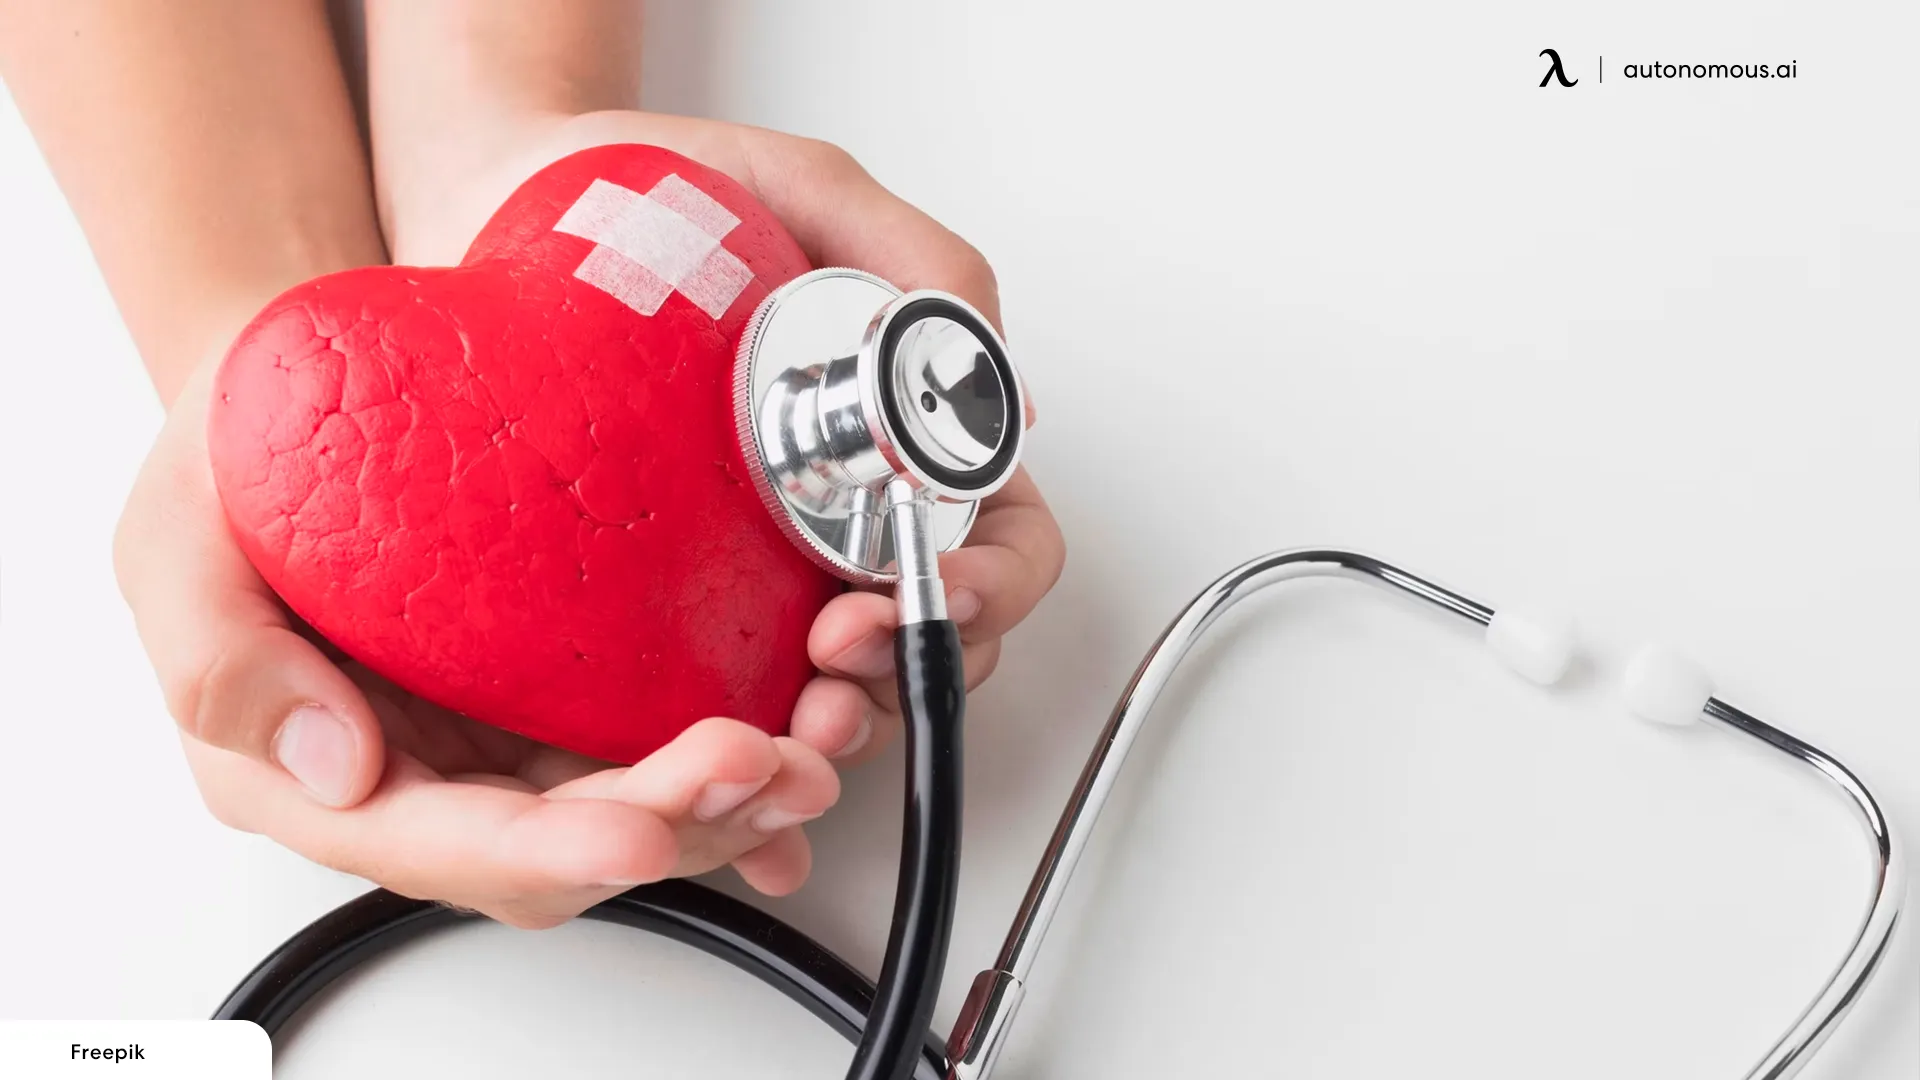 Lower Risk of Heart Disease